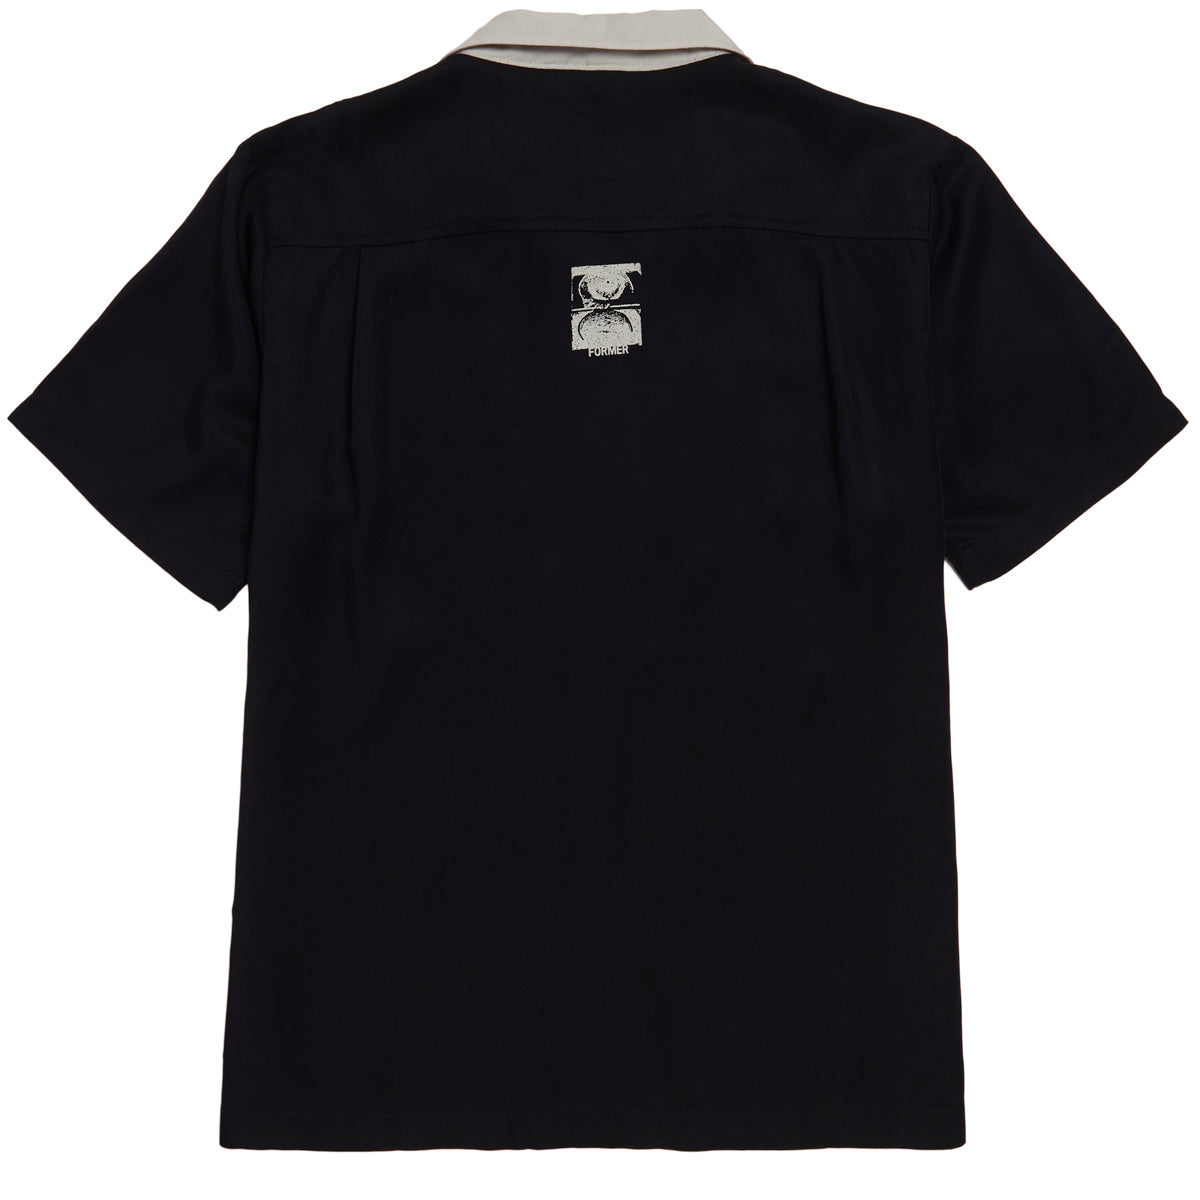 Former Delicate Border Shirt - Black image 2